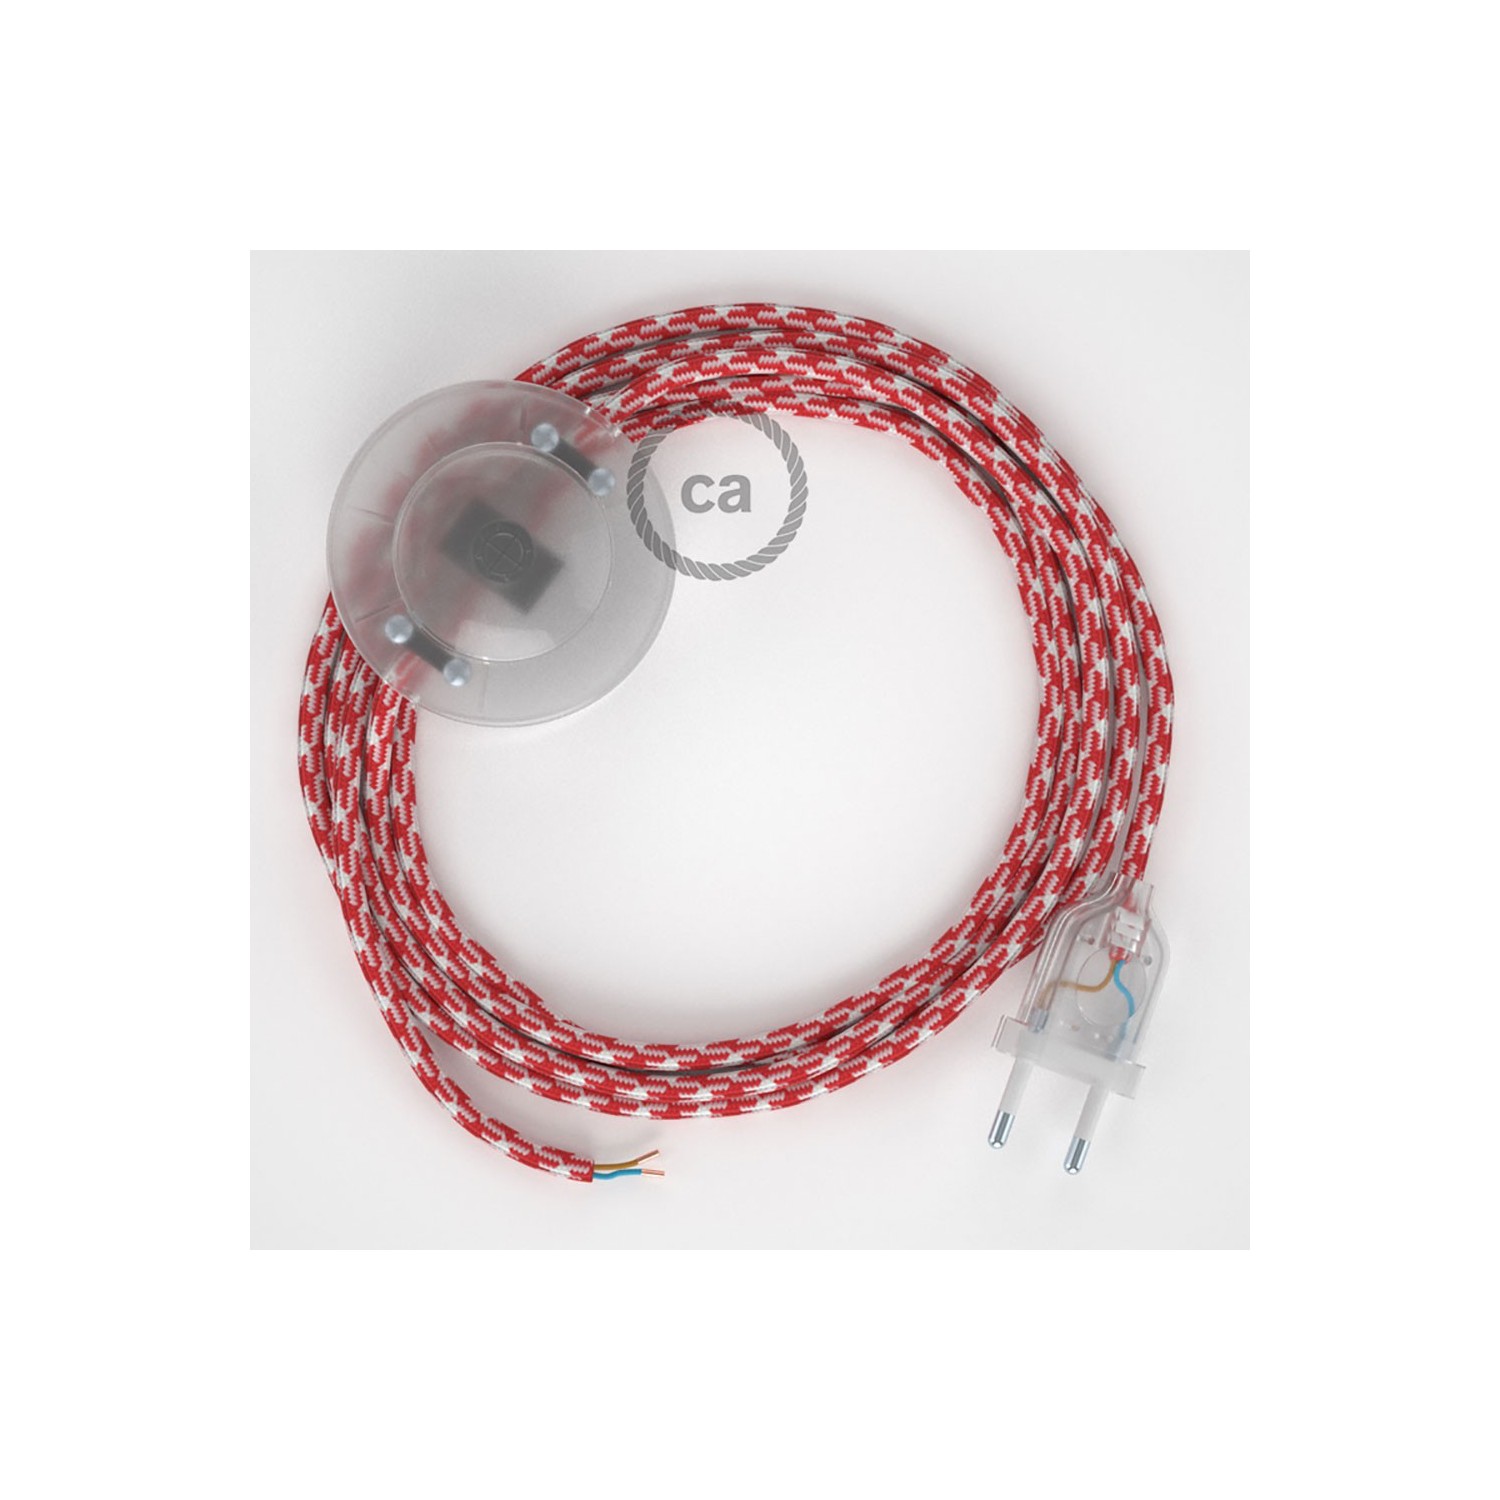 Strijkijzersnoer set RP09 rood - wit tweekleurig viscose 3 m. voor staande lamp met stekker en voetschakelaar.